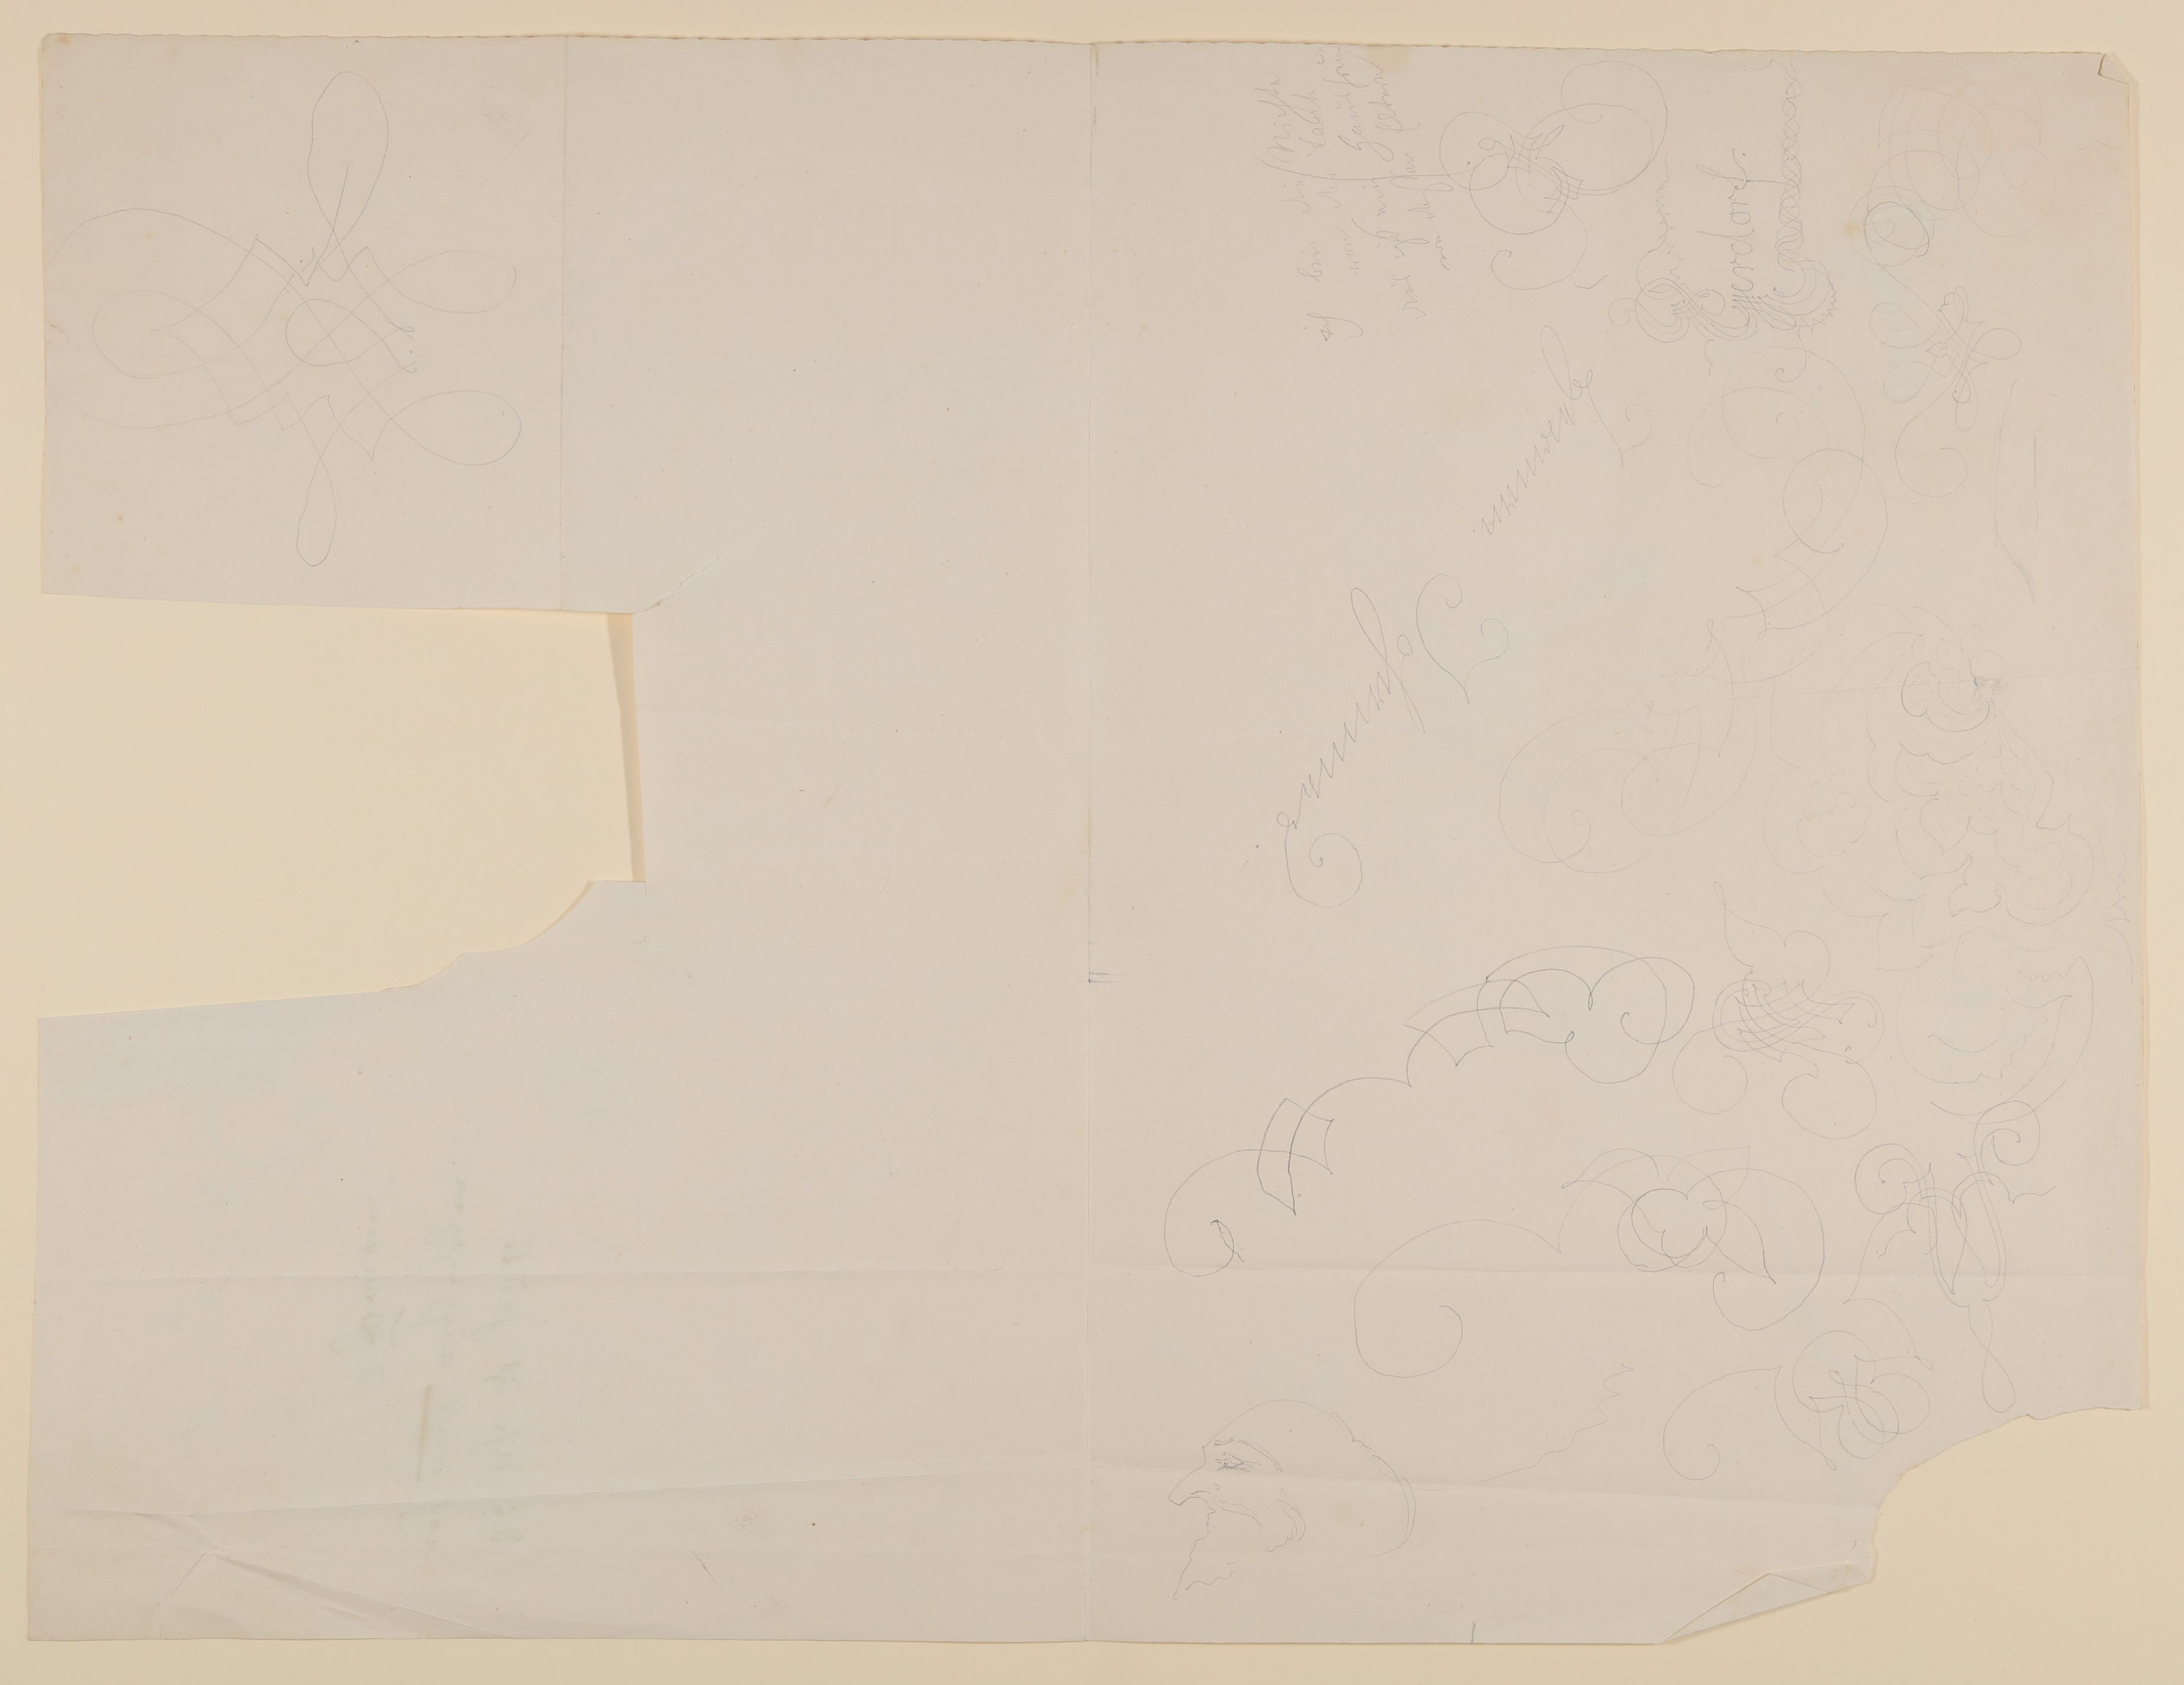 Skizzenblatt mit Schreibmeisterschnörkeln und 1 karikaturhaften Kopfstudie [aus einer Mappe mit Skizzenblättern von Gisela von Arnim und Herman Grimm] (Freies Deutsches Hochstift CC BY-NC-SA)